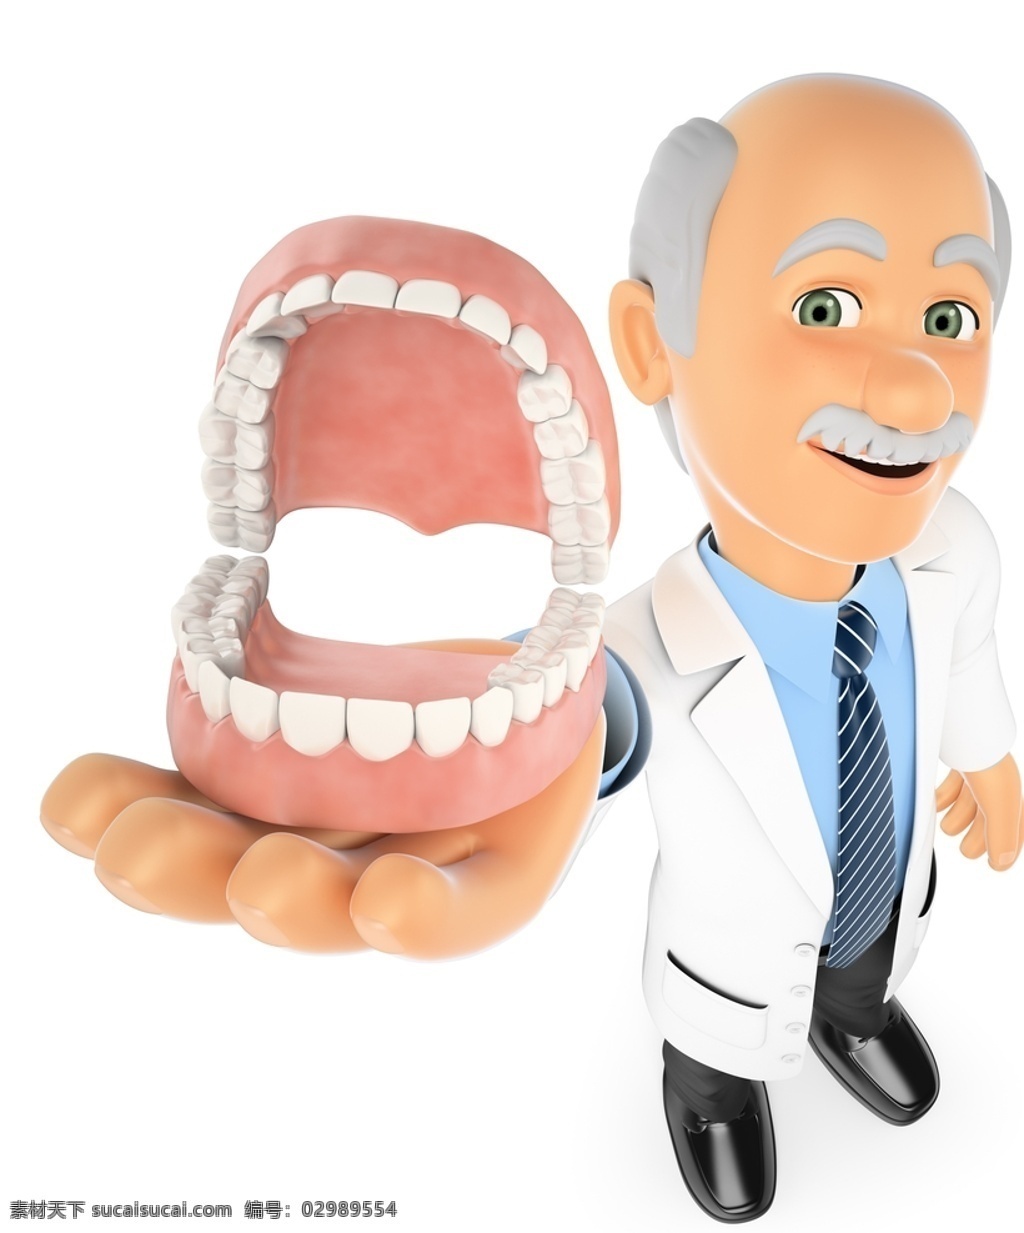 牙医 牙齿模型 牙模 牙龈 牙龄 牙科 口腔护理